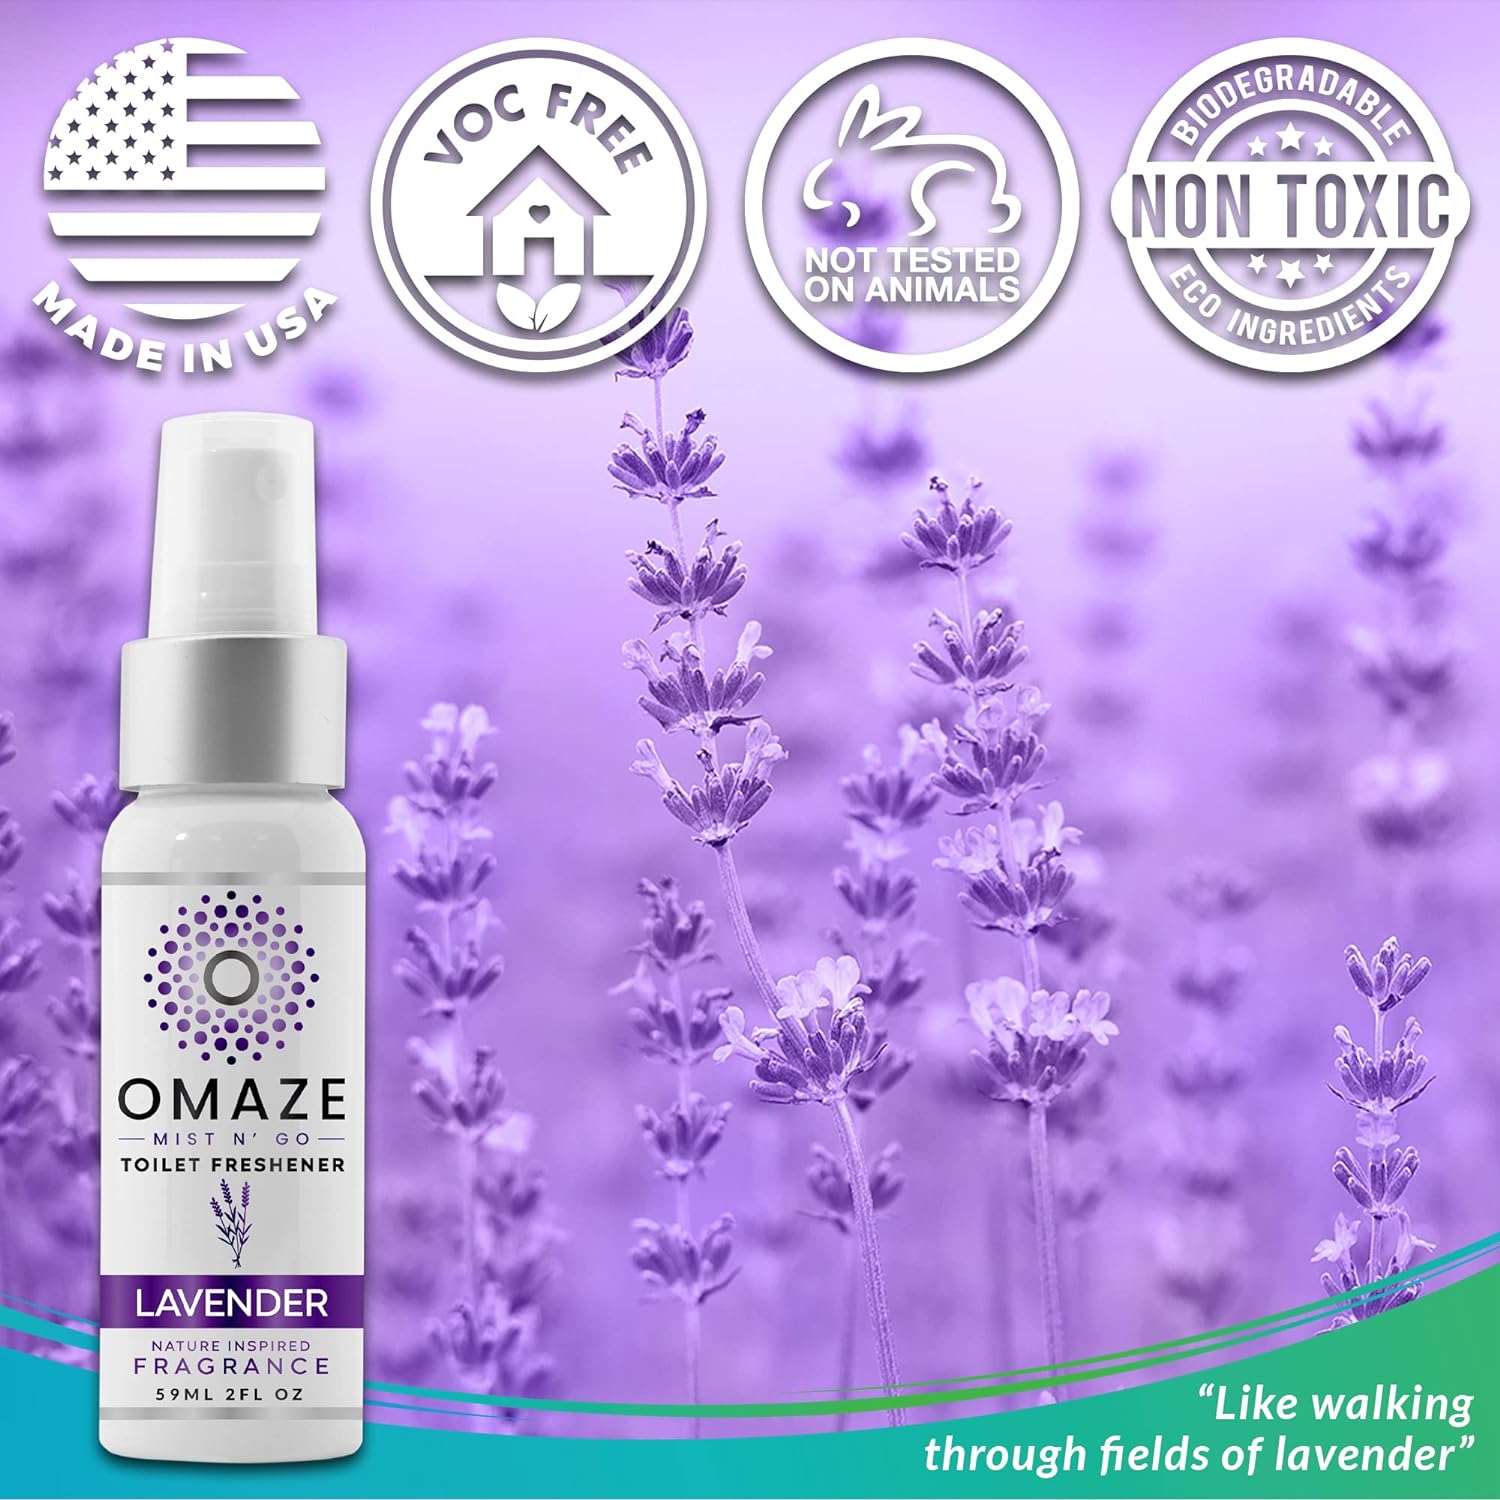 OMAZE Mist N Go Toilet Freshener, Lavender Scent 2Fl Oz (3 Pack) | Odor Neutralizer for Toilets : Health & Household